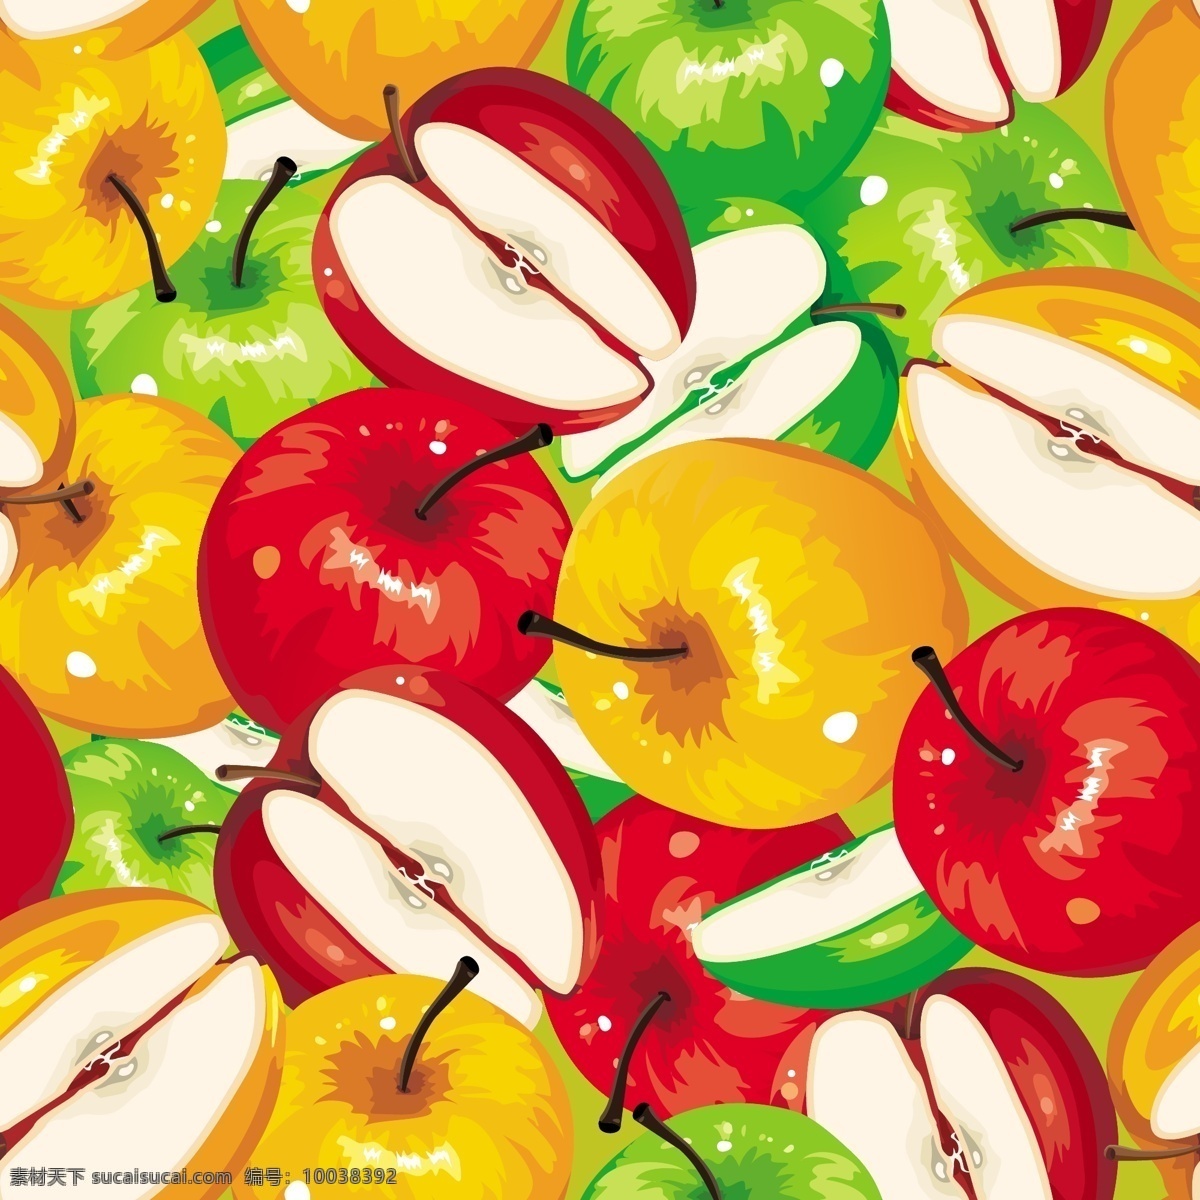 绘画 风格 苹果 矢量 背景 水果和蔬菜 矢量图 其他矢量图